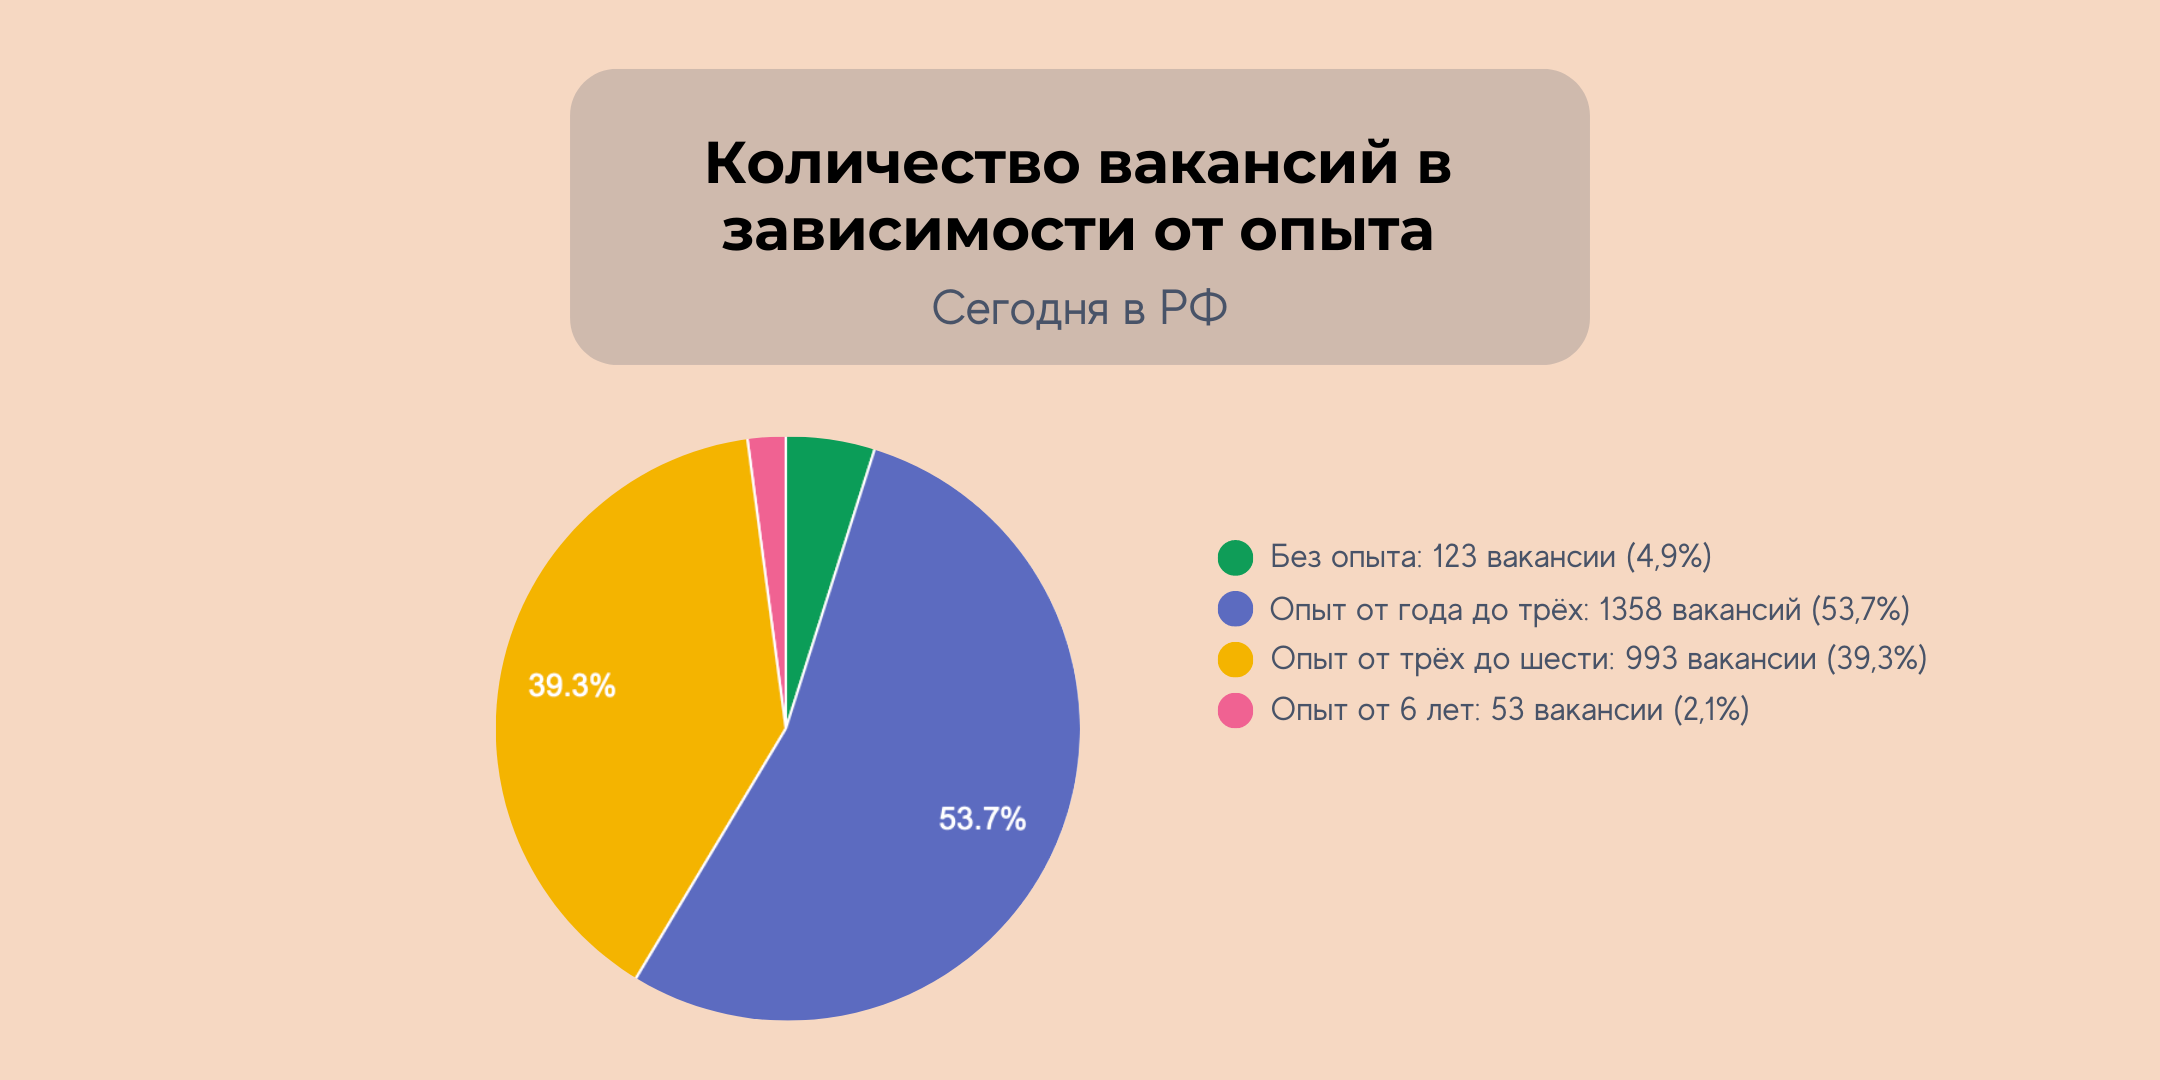 Количество вакансий в зависимости от опыта в РФ на 1 июля